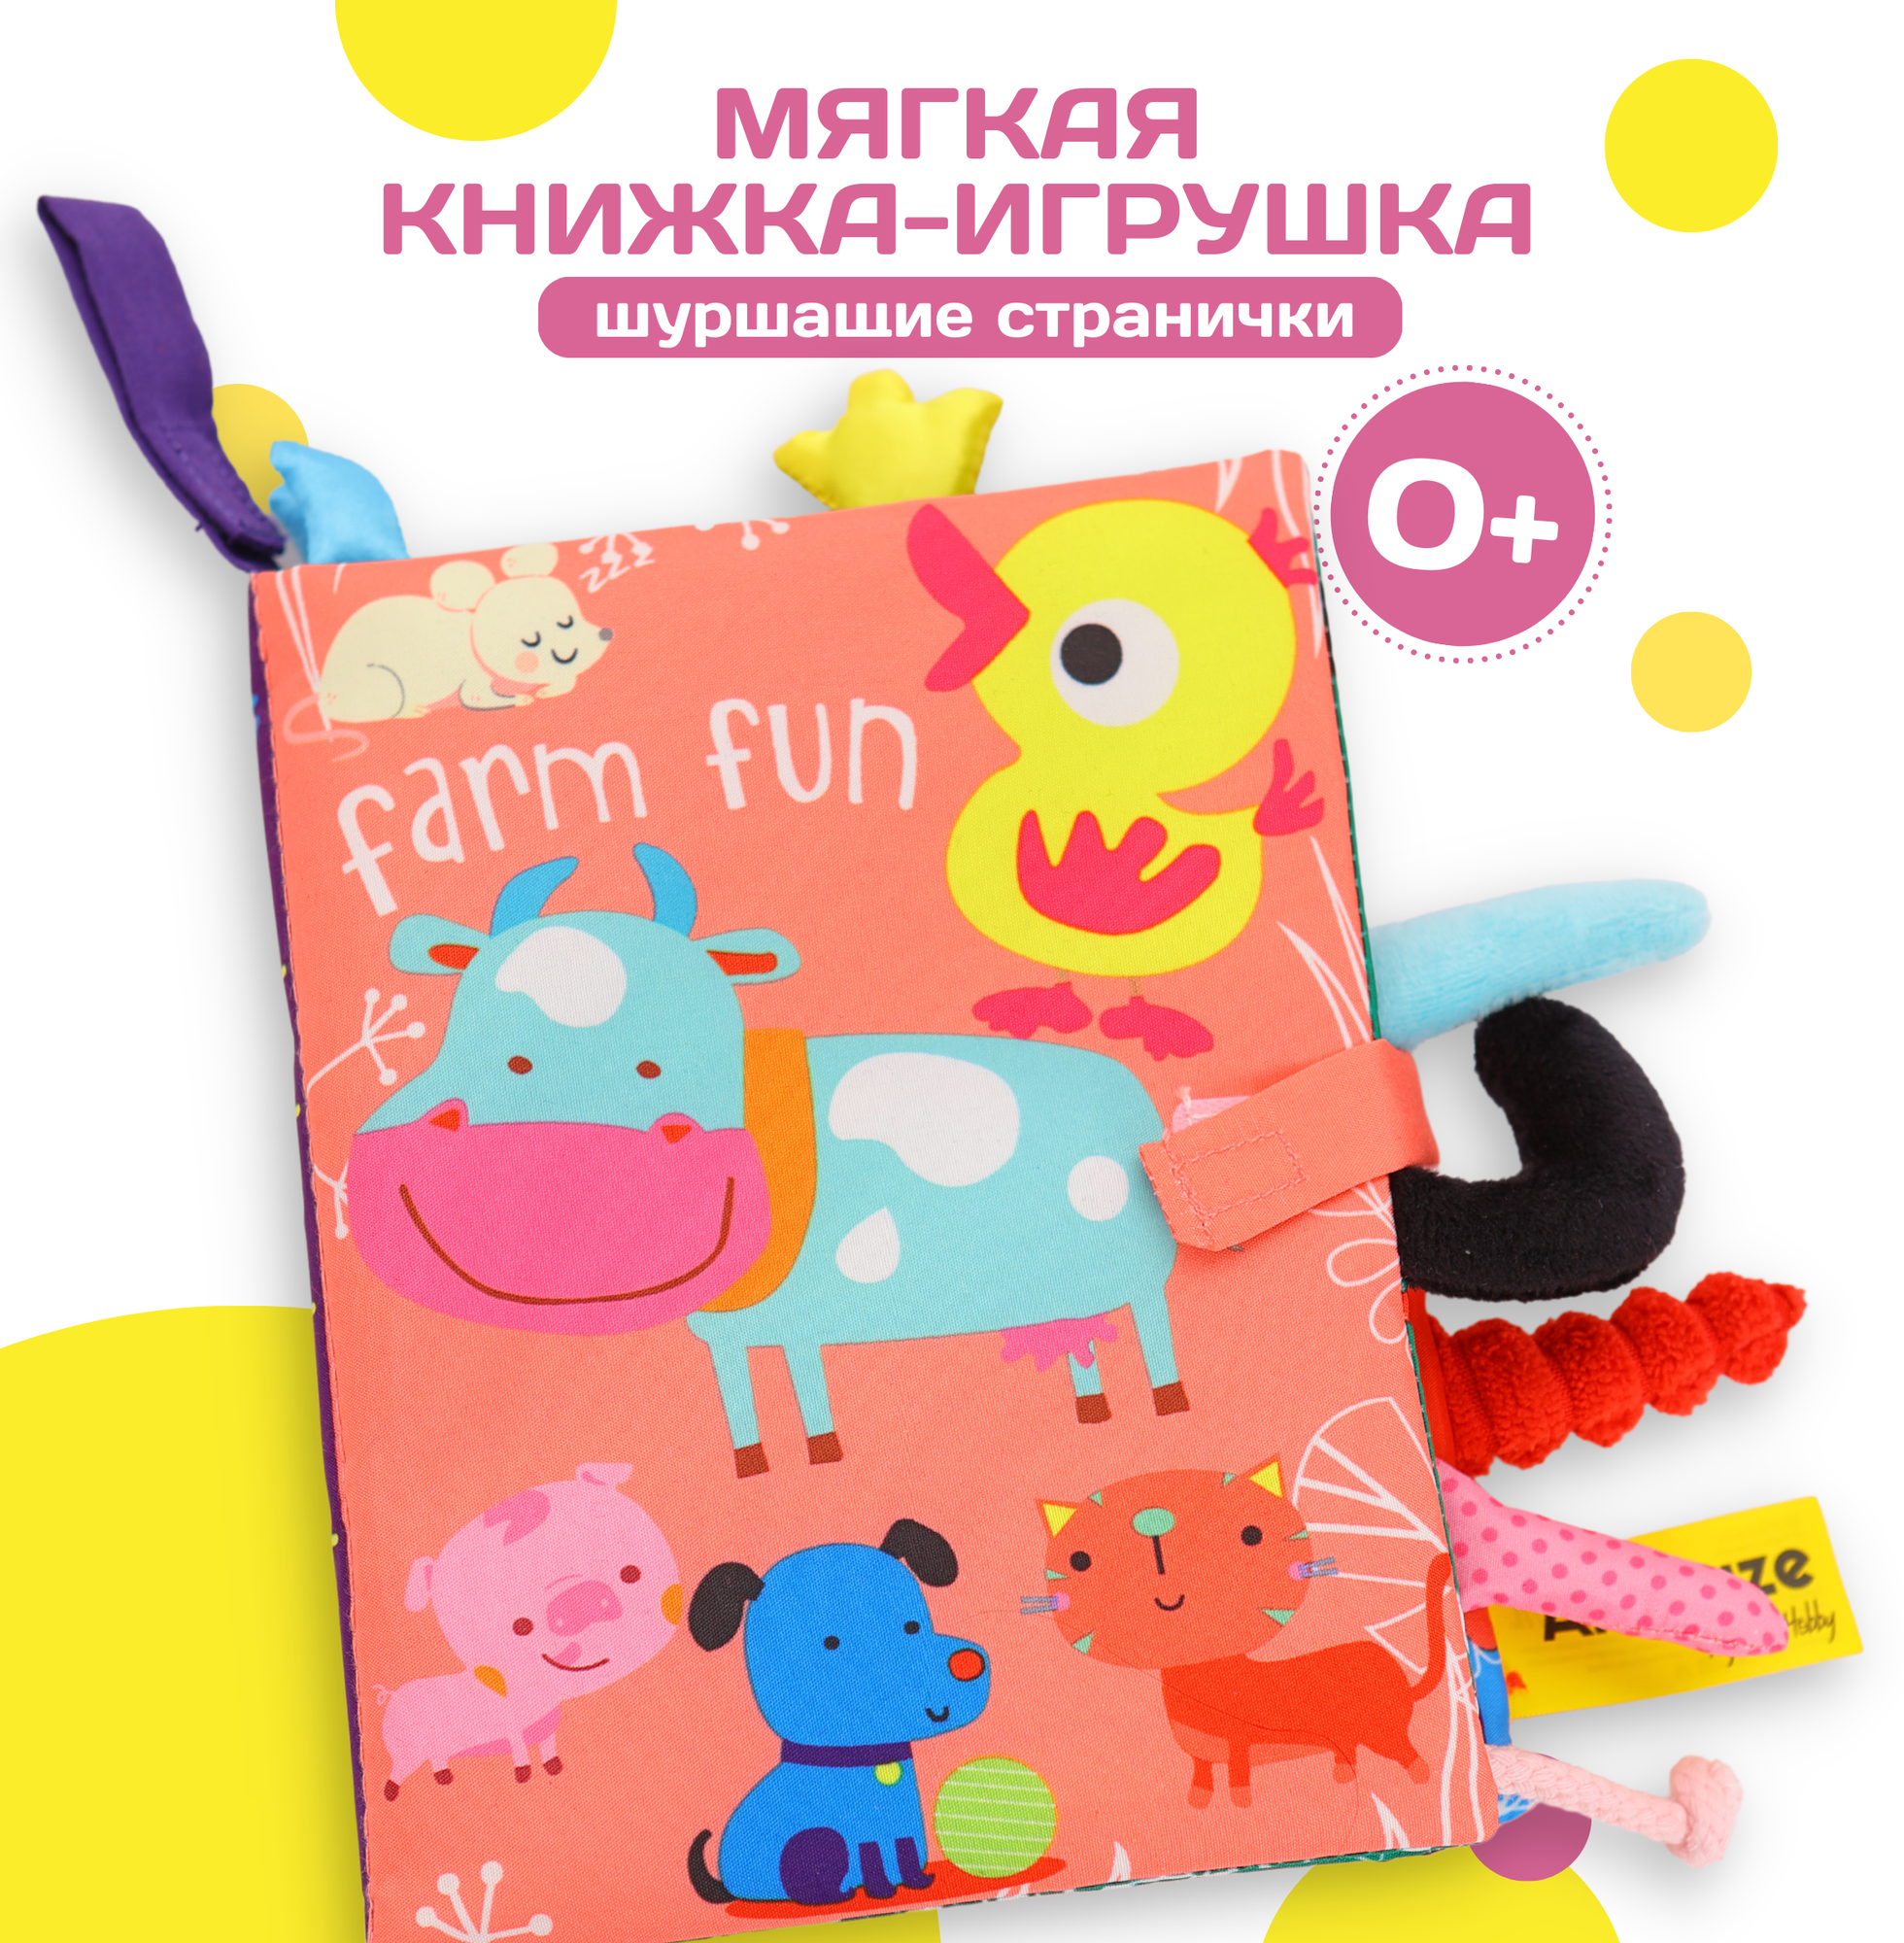 Мягкая развивающая книжка-игрушка для малышей, сенсорная, с шуршащими страницами и хвостами животных Ферма розовая